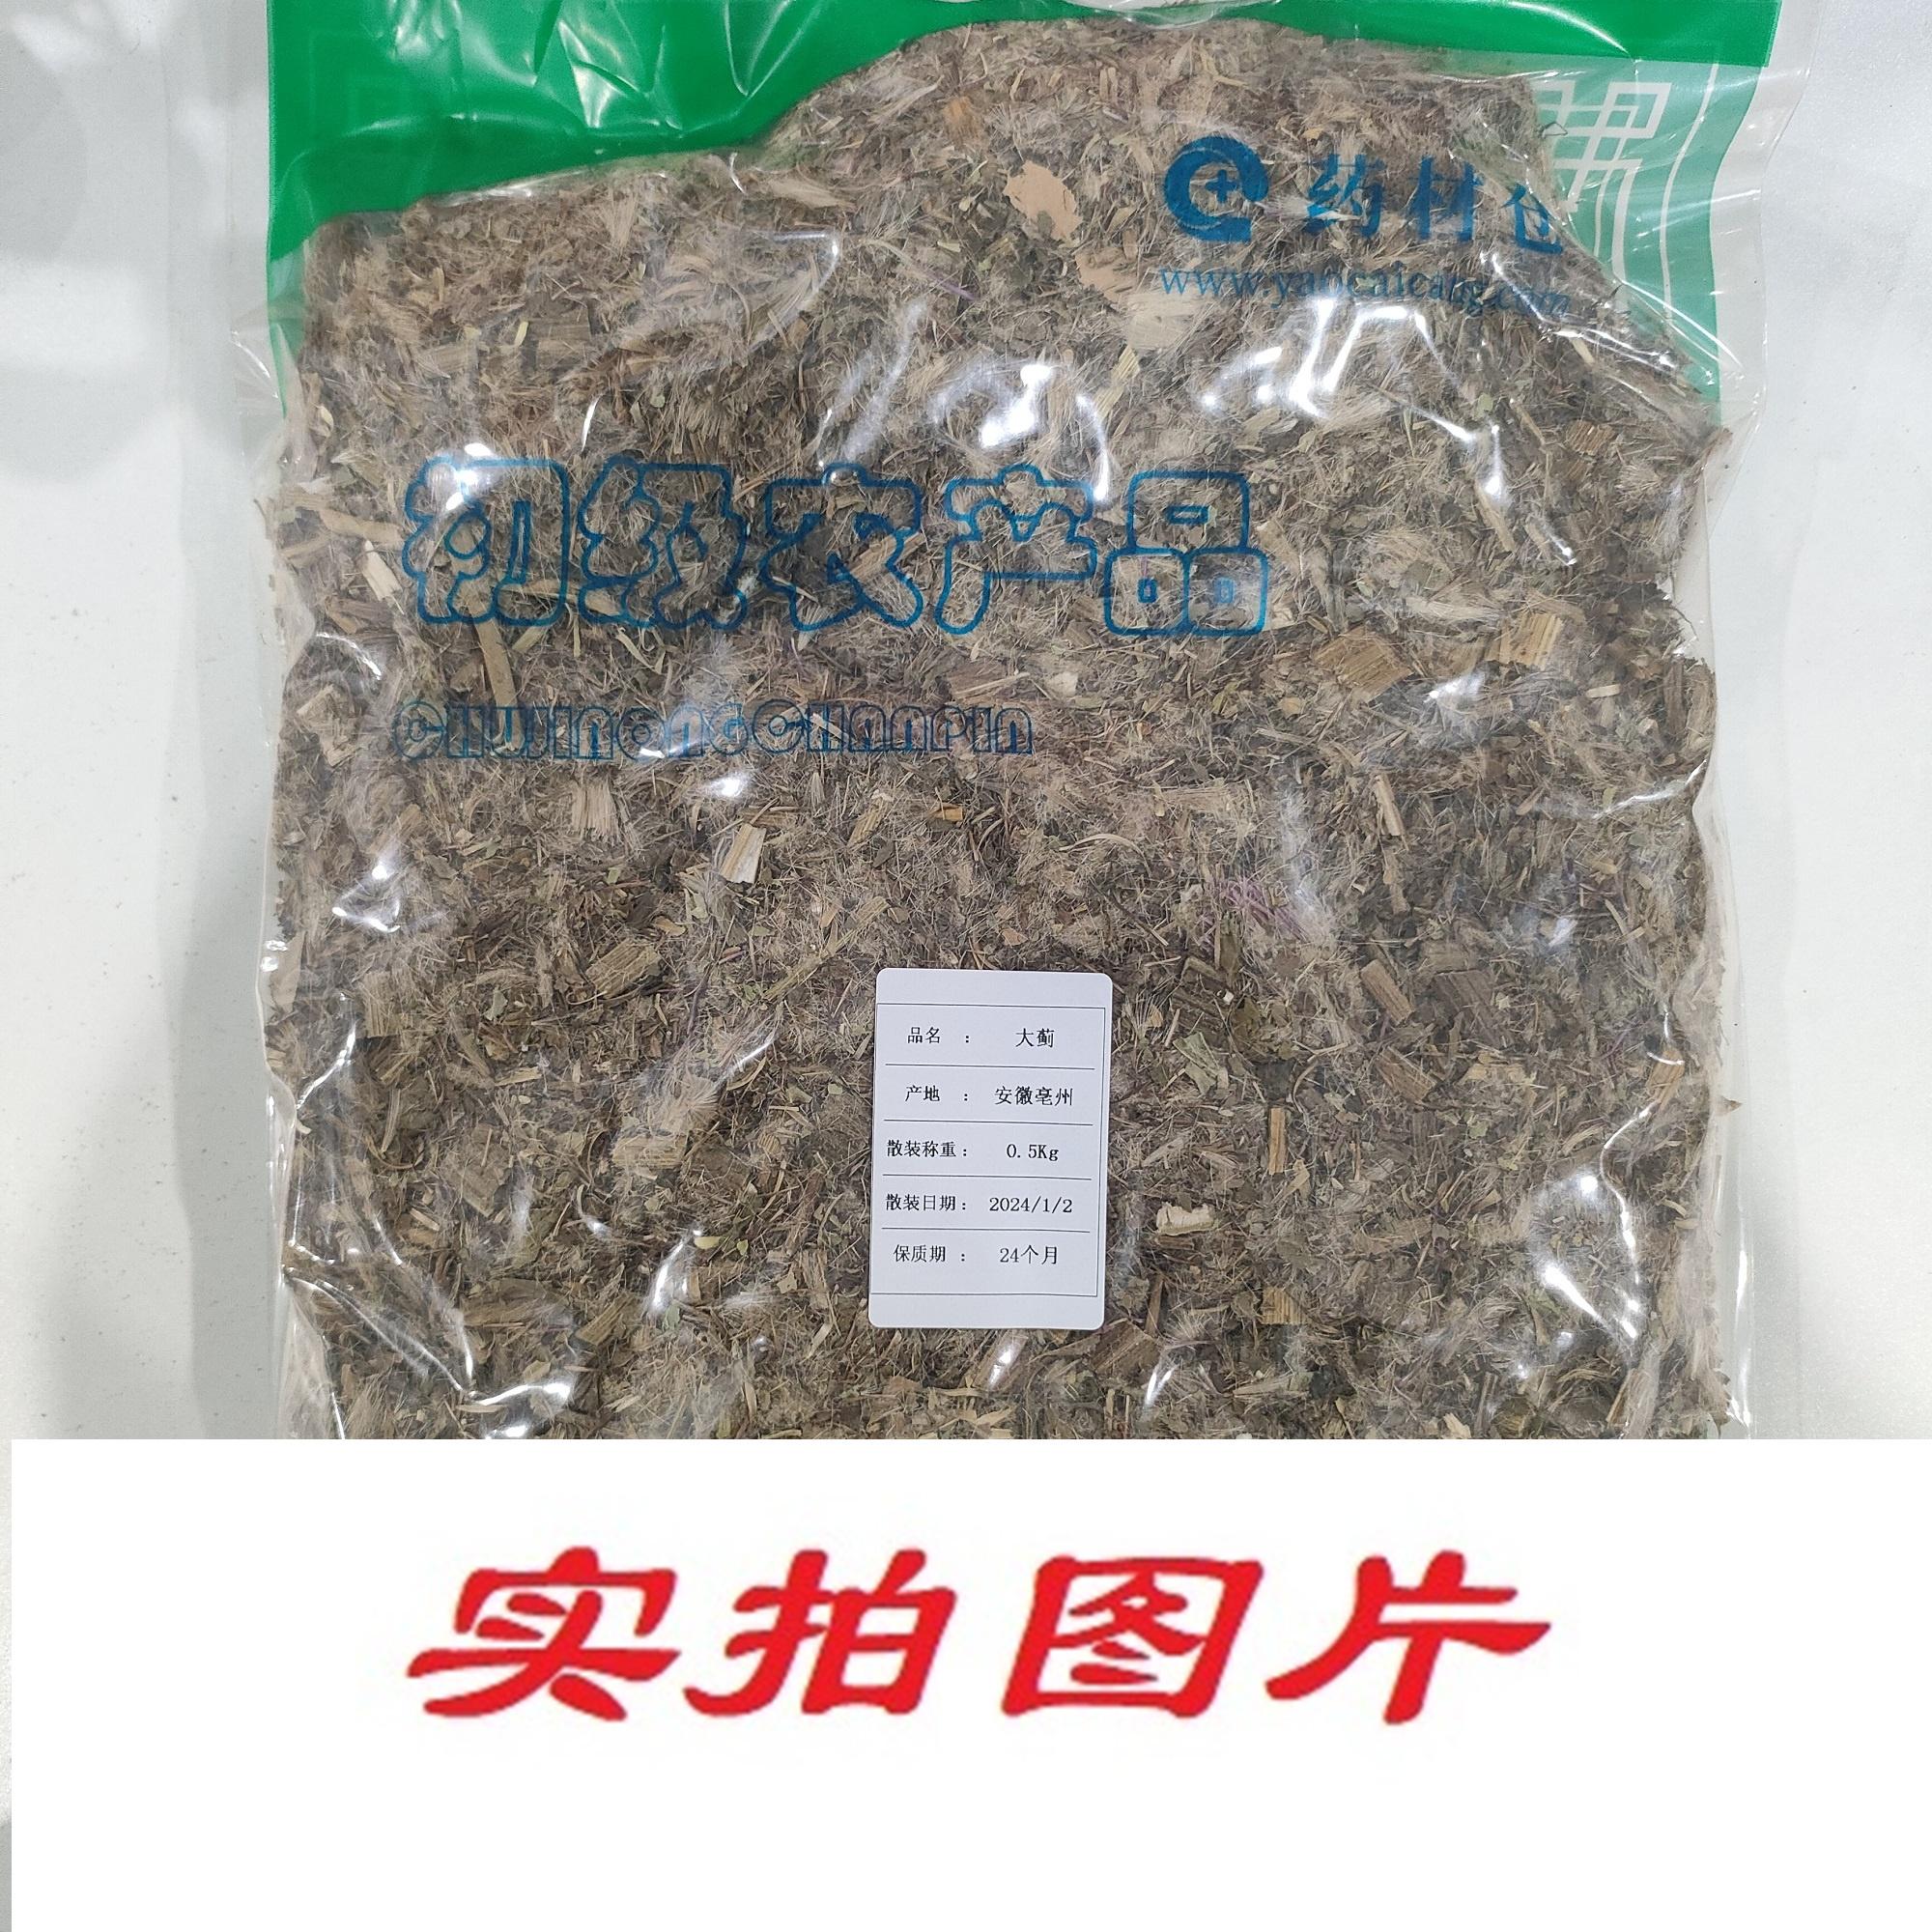 【】大蓟0.5kg-农副产品